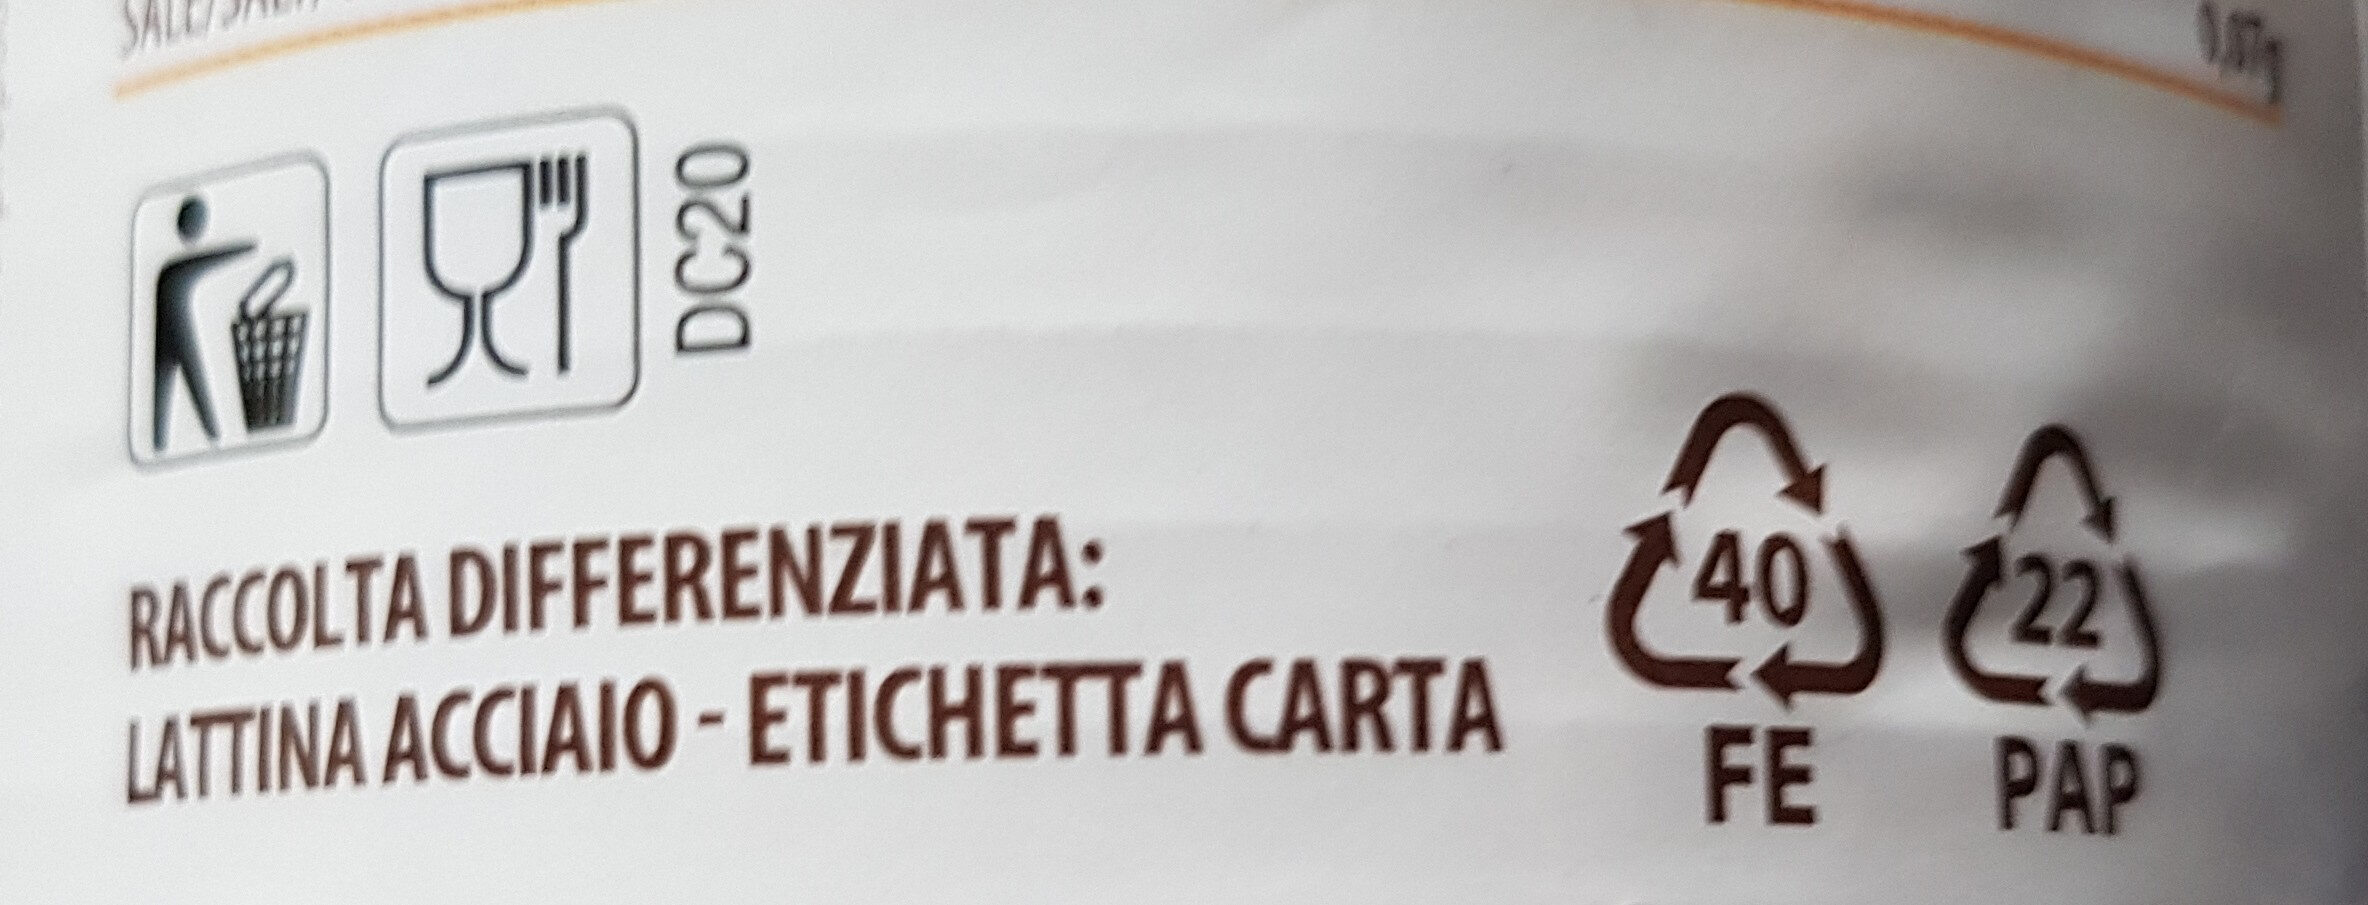 Ceci Italiani al Naturale - Istruzioni per il riciclaggio e/o informazioni sull'imballaggio